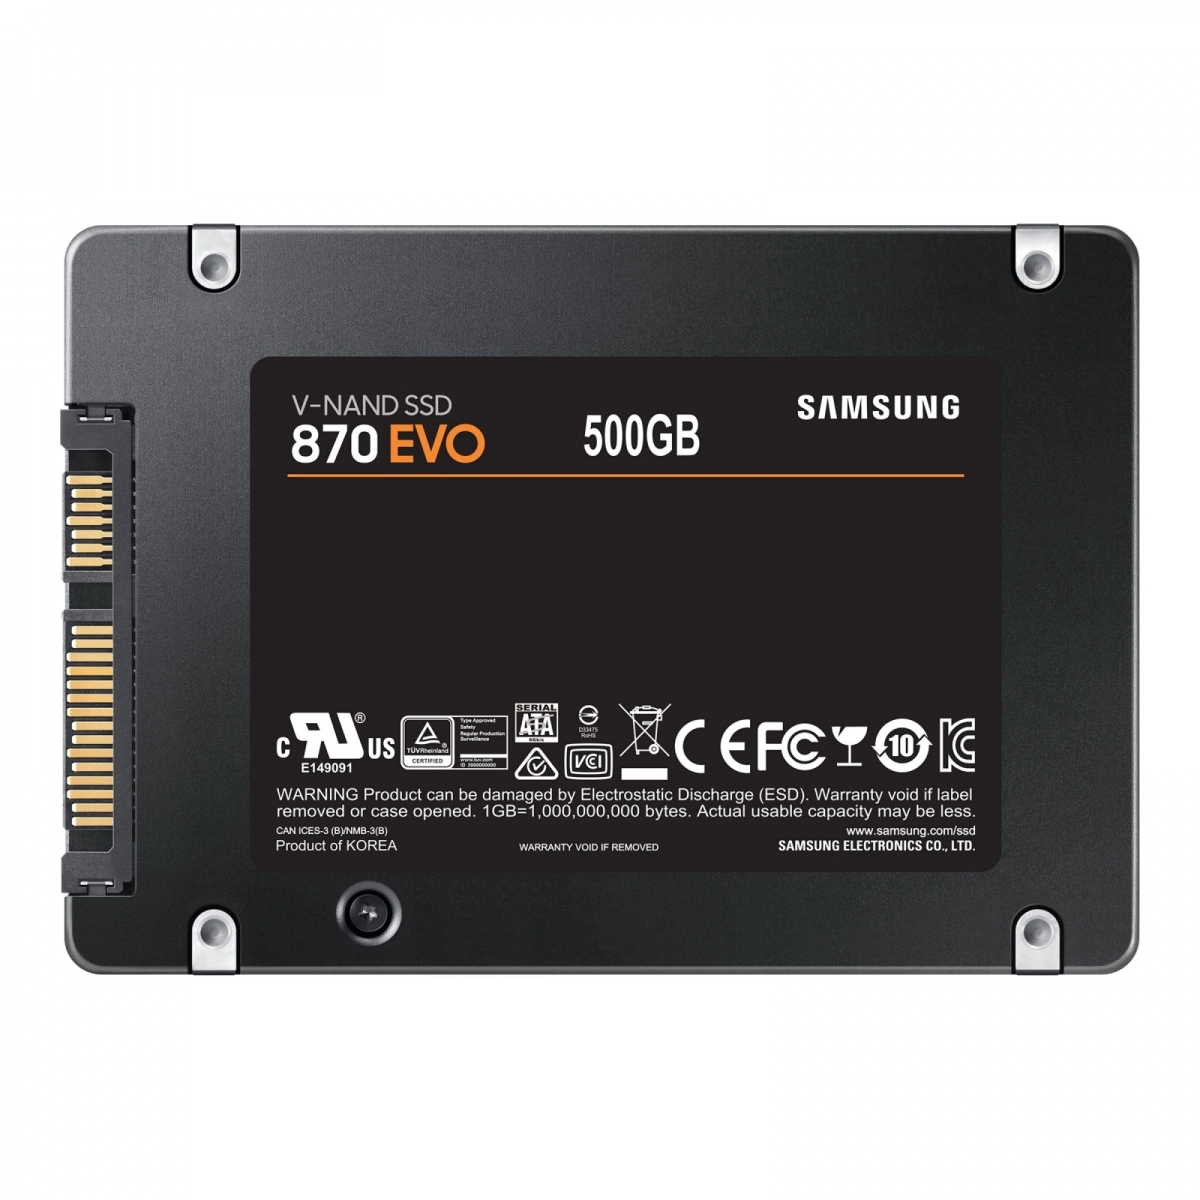 Notebook-Festplatte 500GB, SSD SATA3 MLC für DELL Inspiron 9400